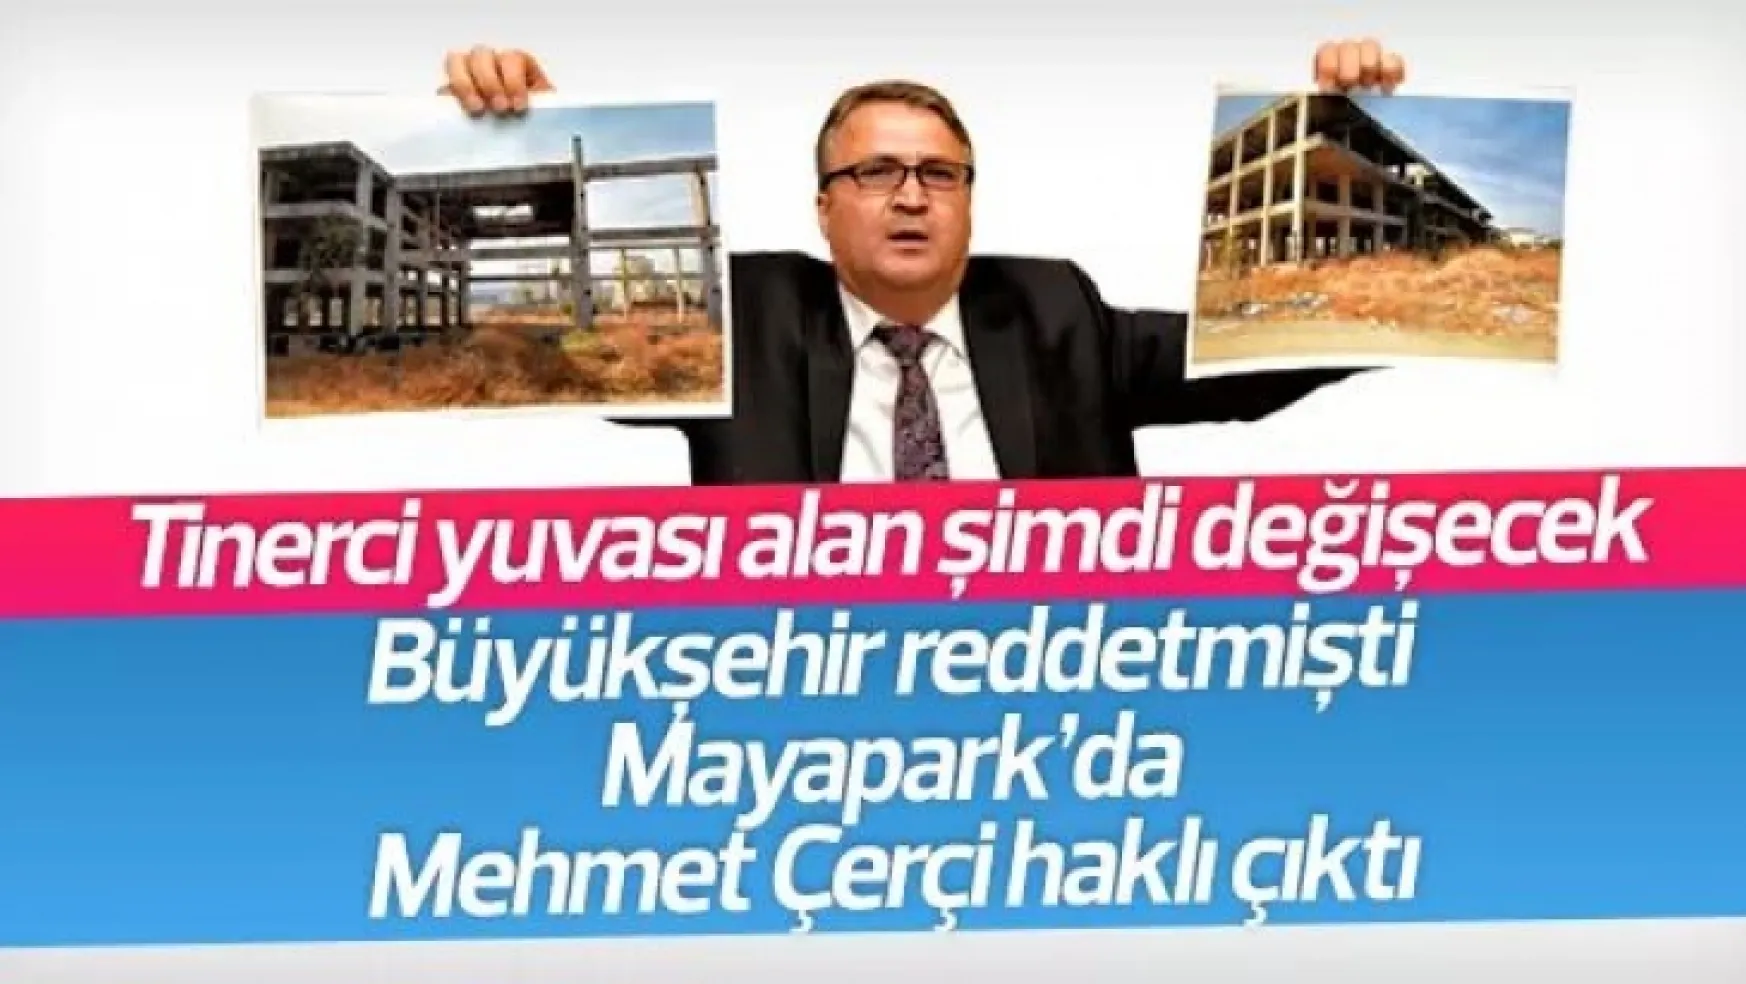 Yargıya taşınan Mayapark projesi Mehmet Çerçi haklı çıkardı